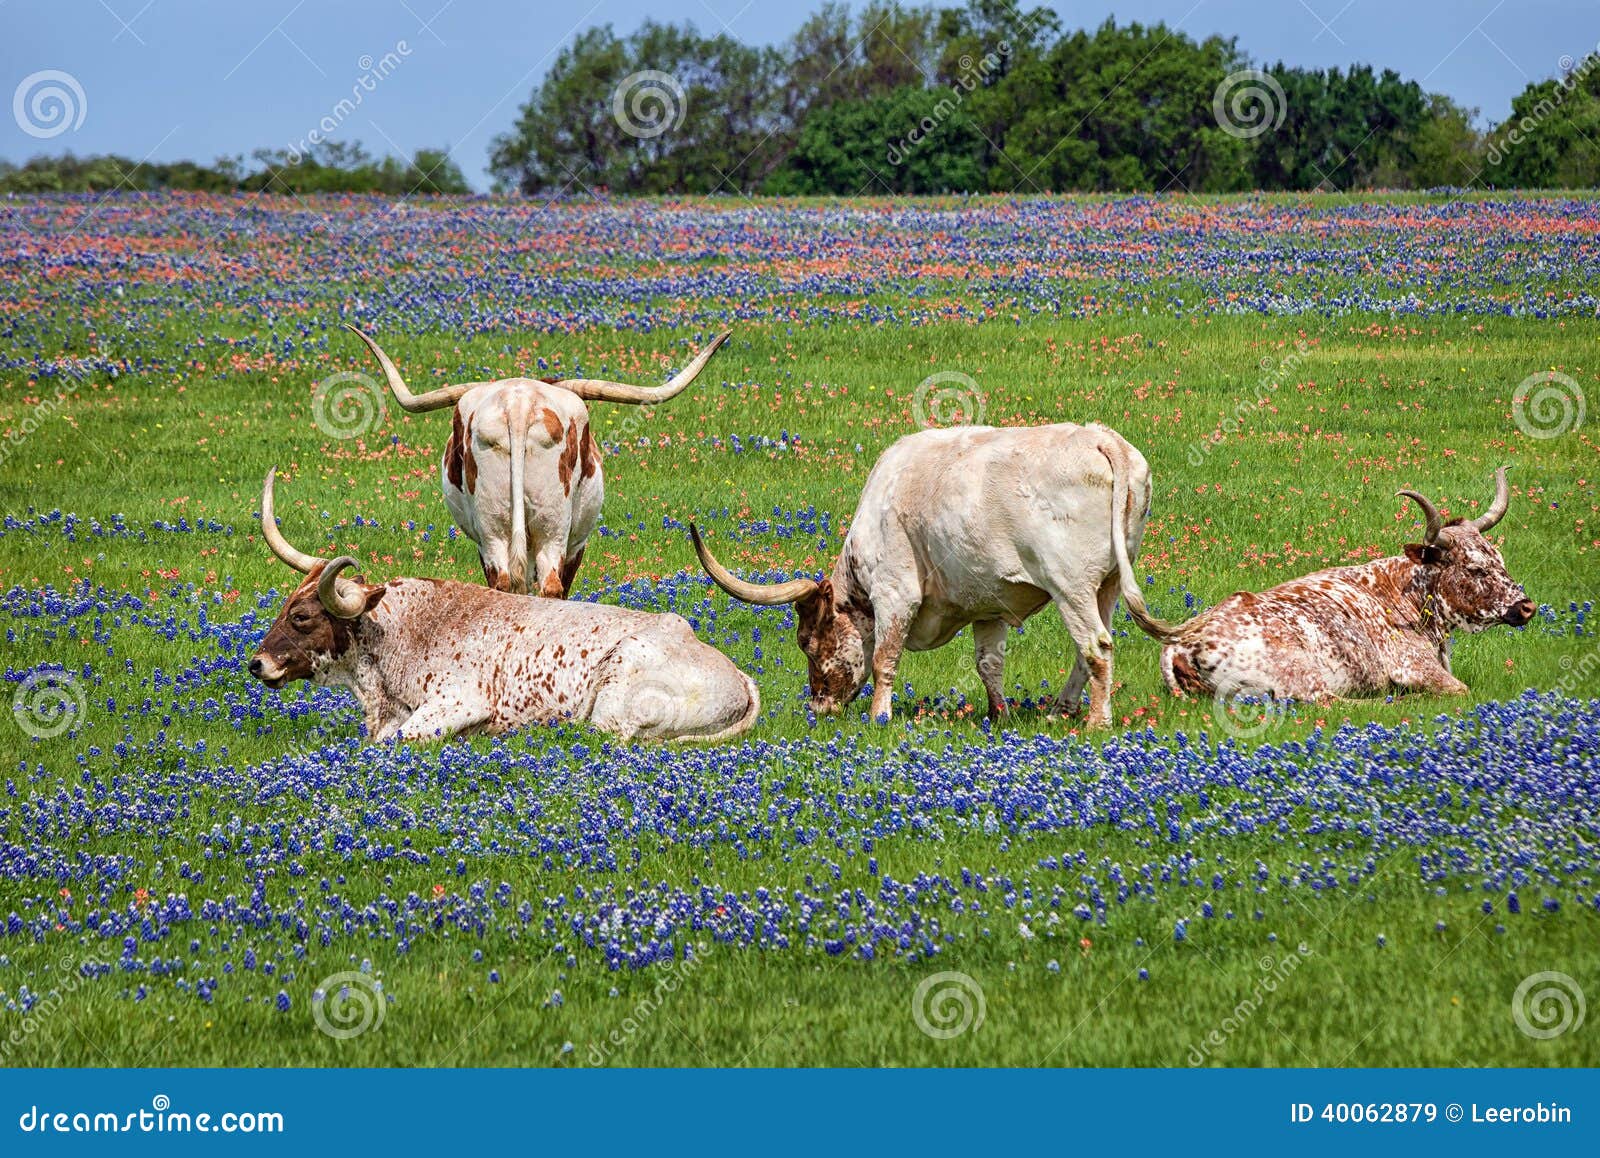 texas longhorn cattle in bluebonnets